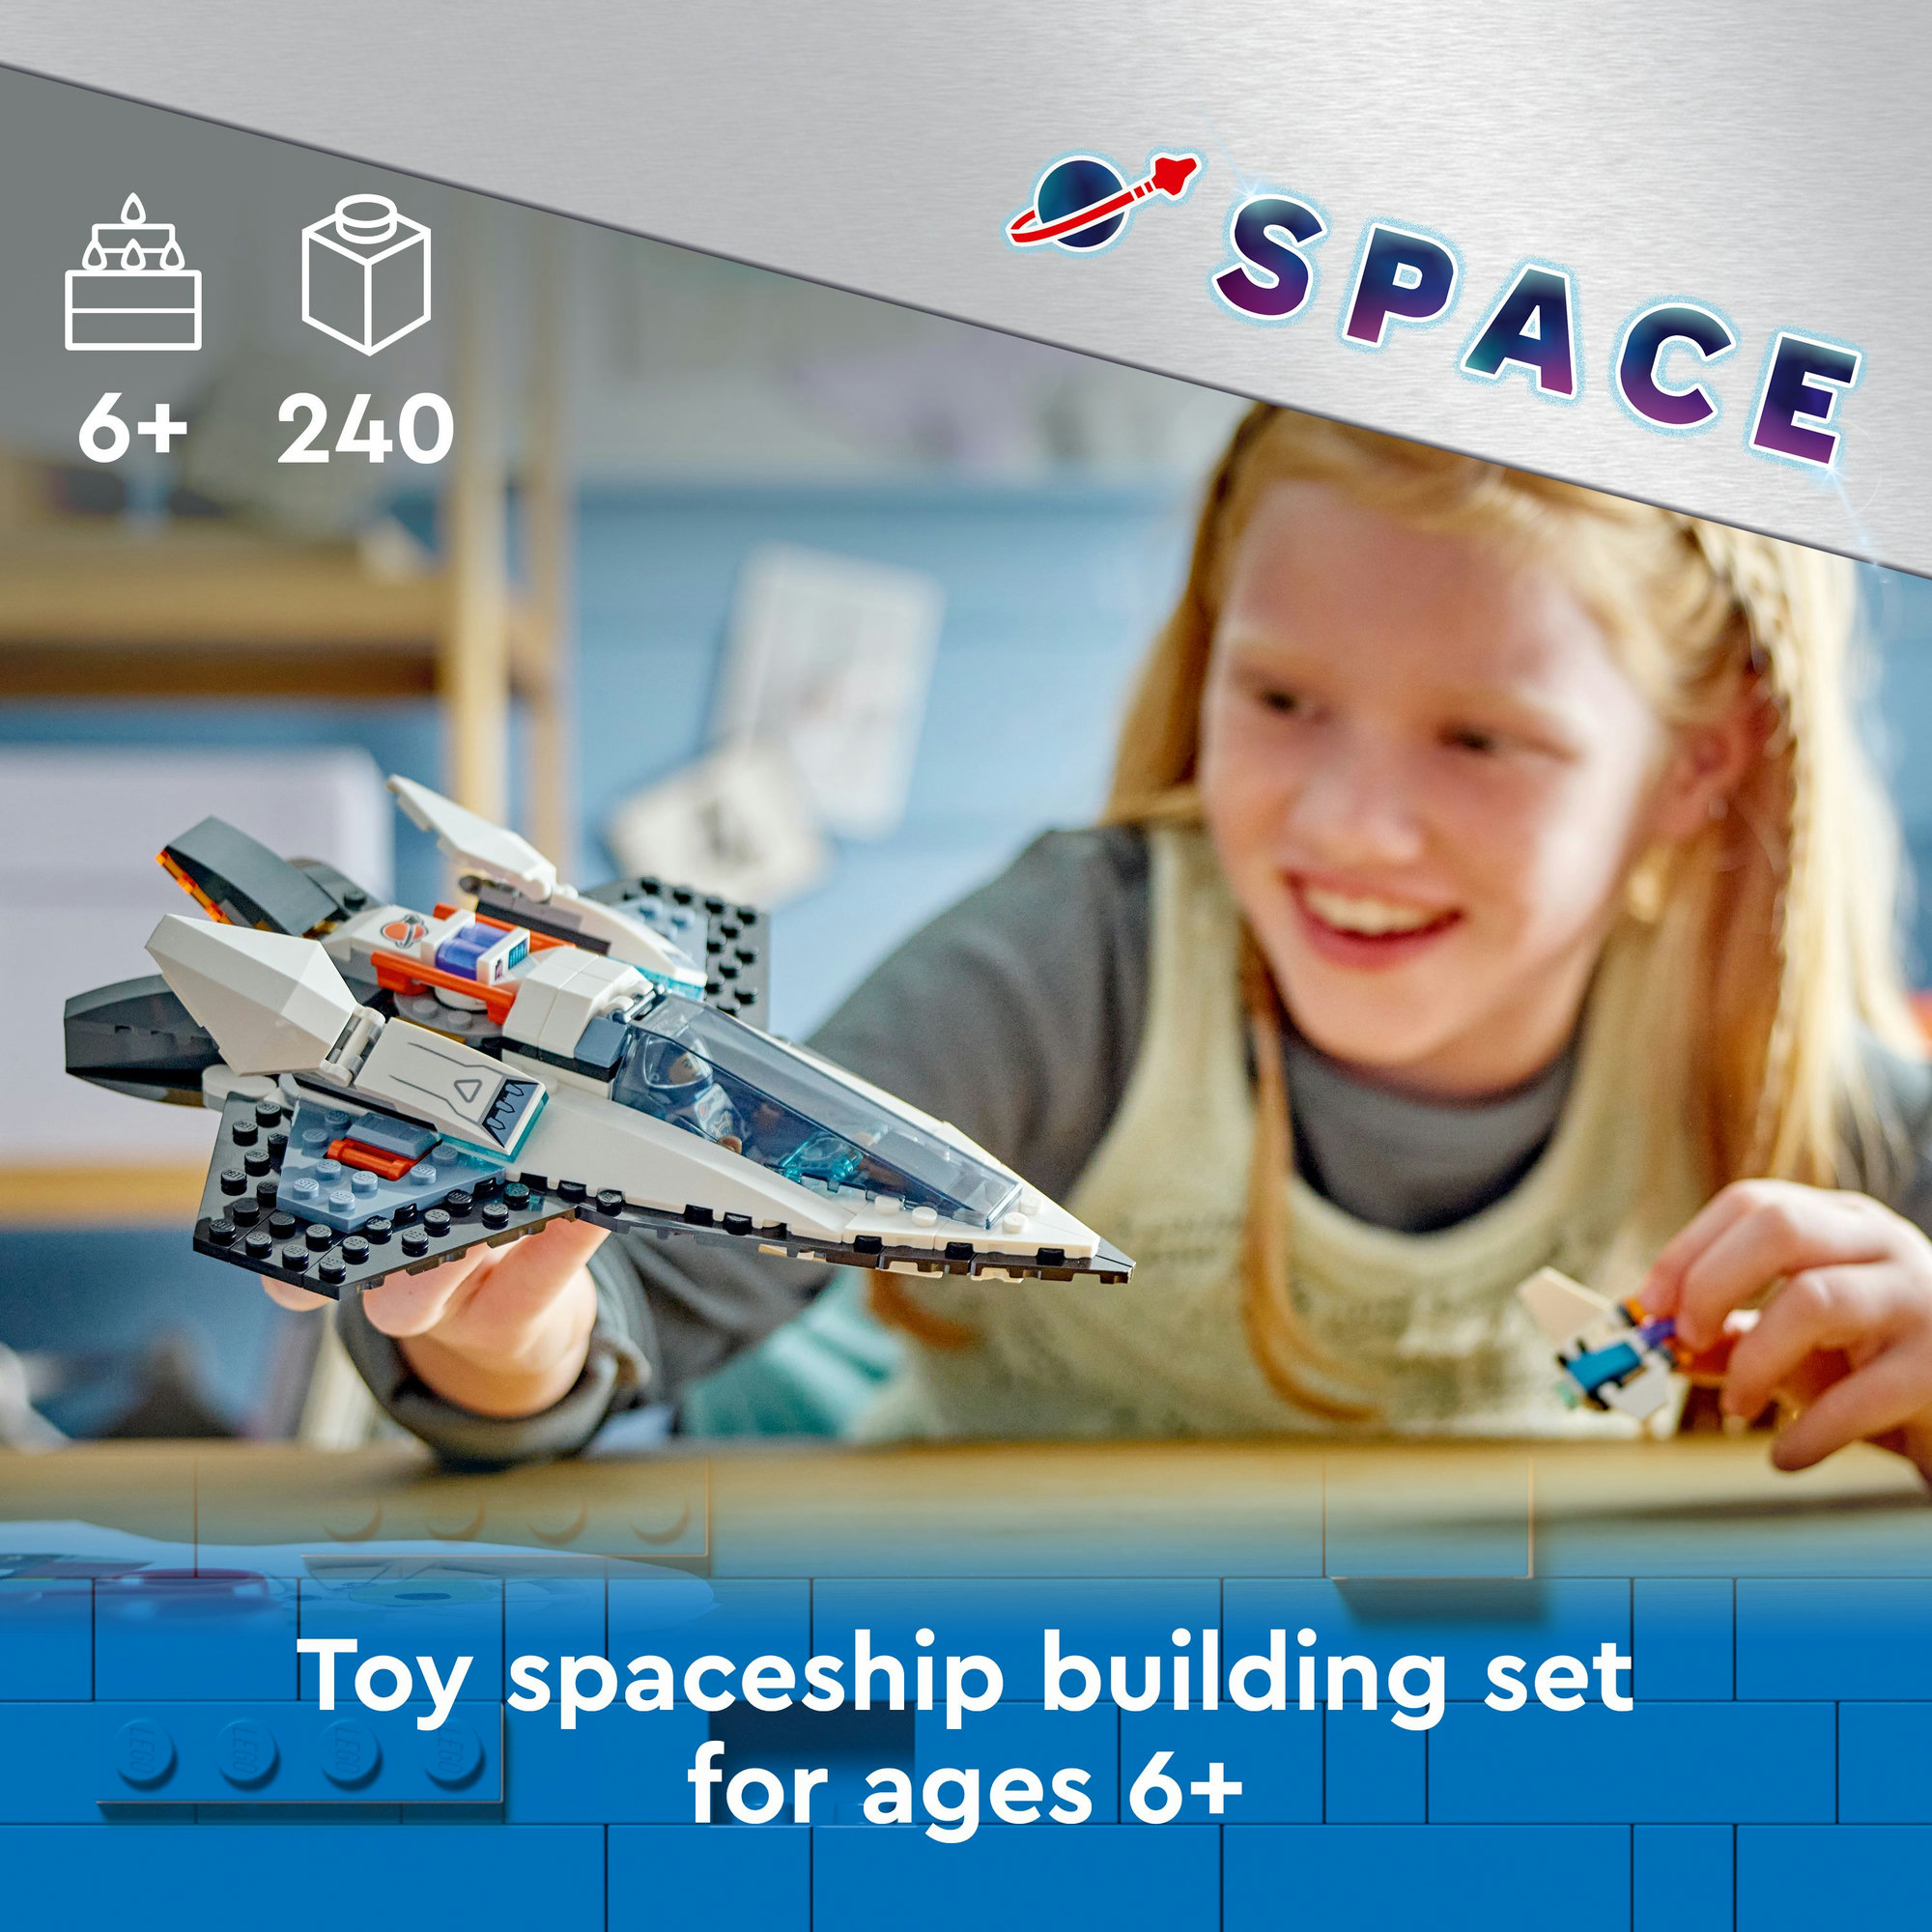 LEGO CITY 60430 Đồ chơi lắp ráp Phi thuyền liên hành tinh (240 chi tiết)